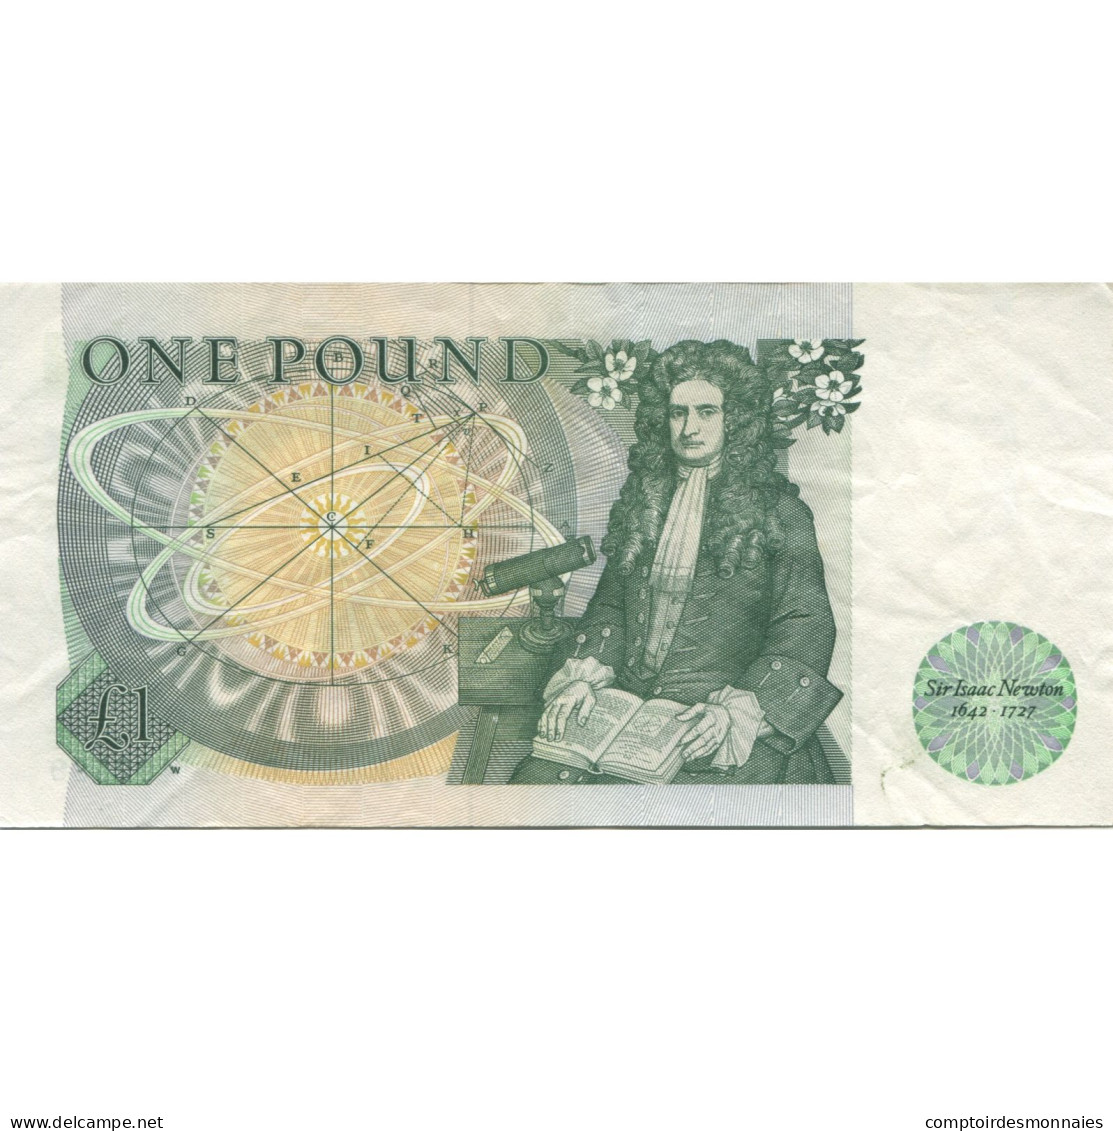 Billet, Grande-Bretagne, 1 Pound, Undated (1978-84), KM:377b, SUP - 1 Pond